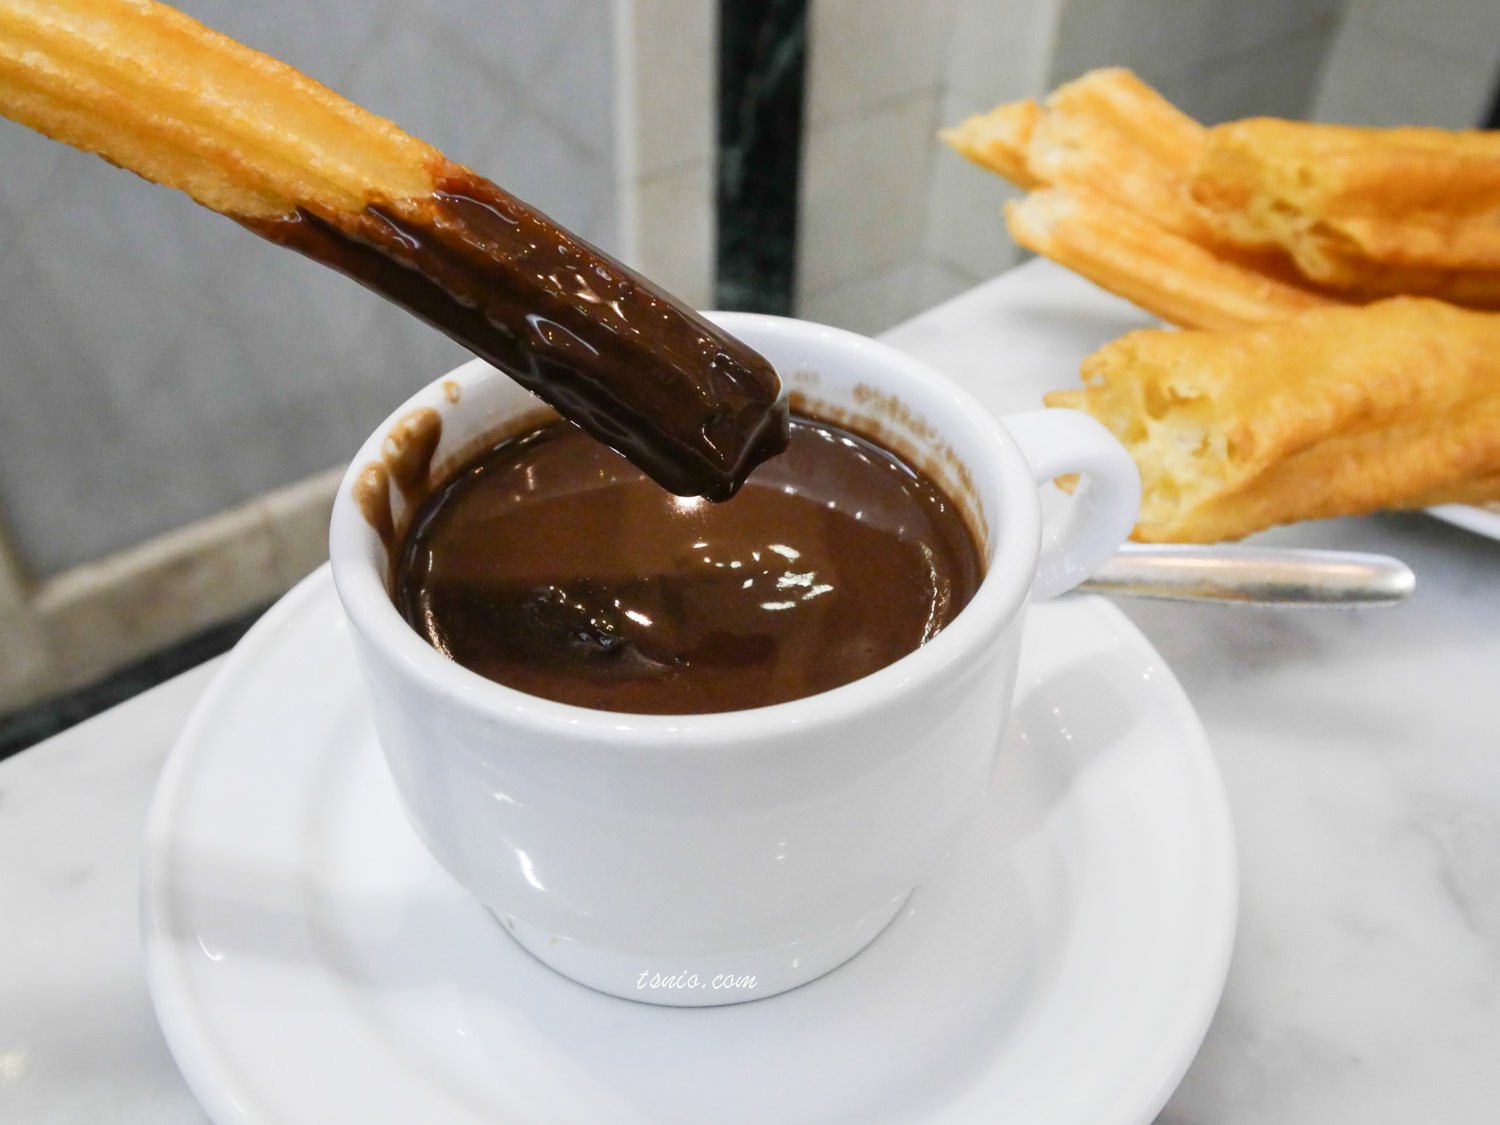 西班牙馬德里美食推薦 Chocolatería San Ginés 必吃西班牙油條巧克力